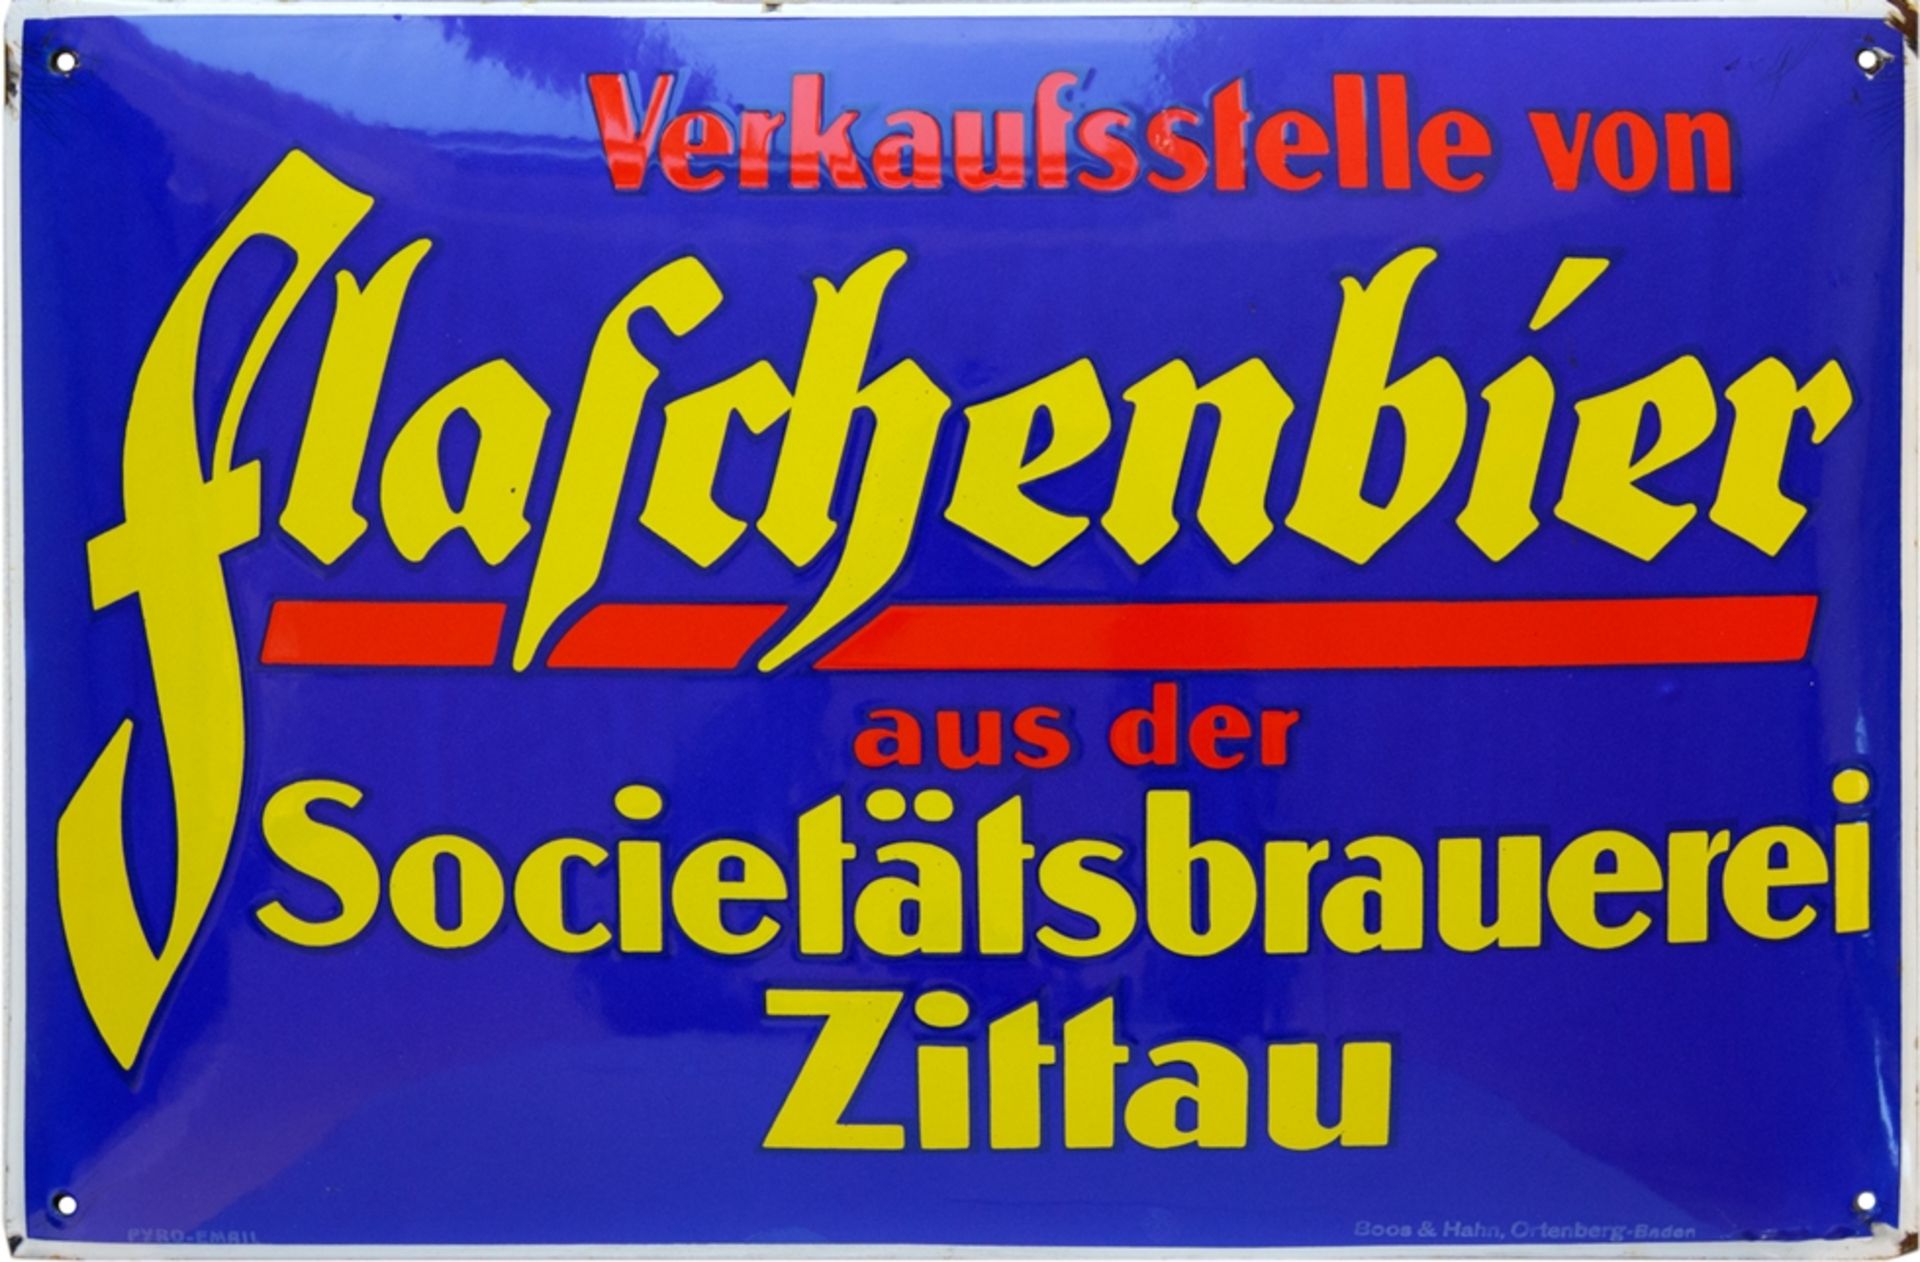 Emailschild Flaschenbier der Societätsbrauerei Zittau, um 1930